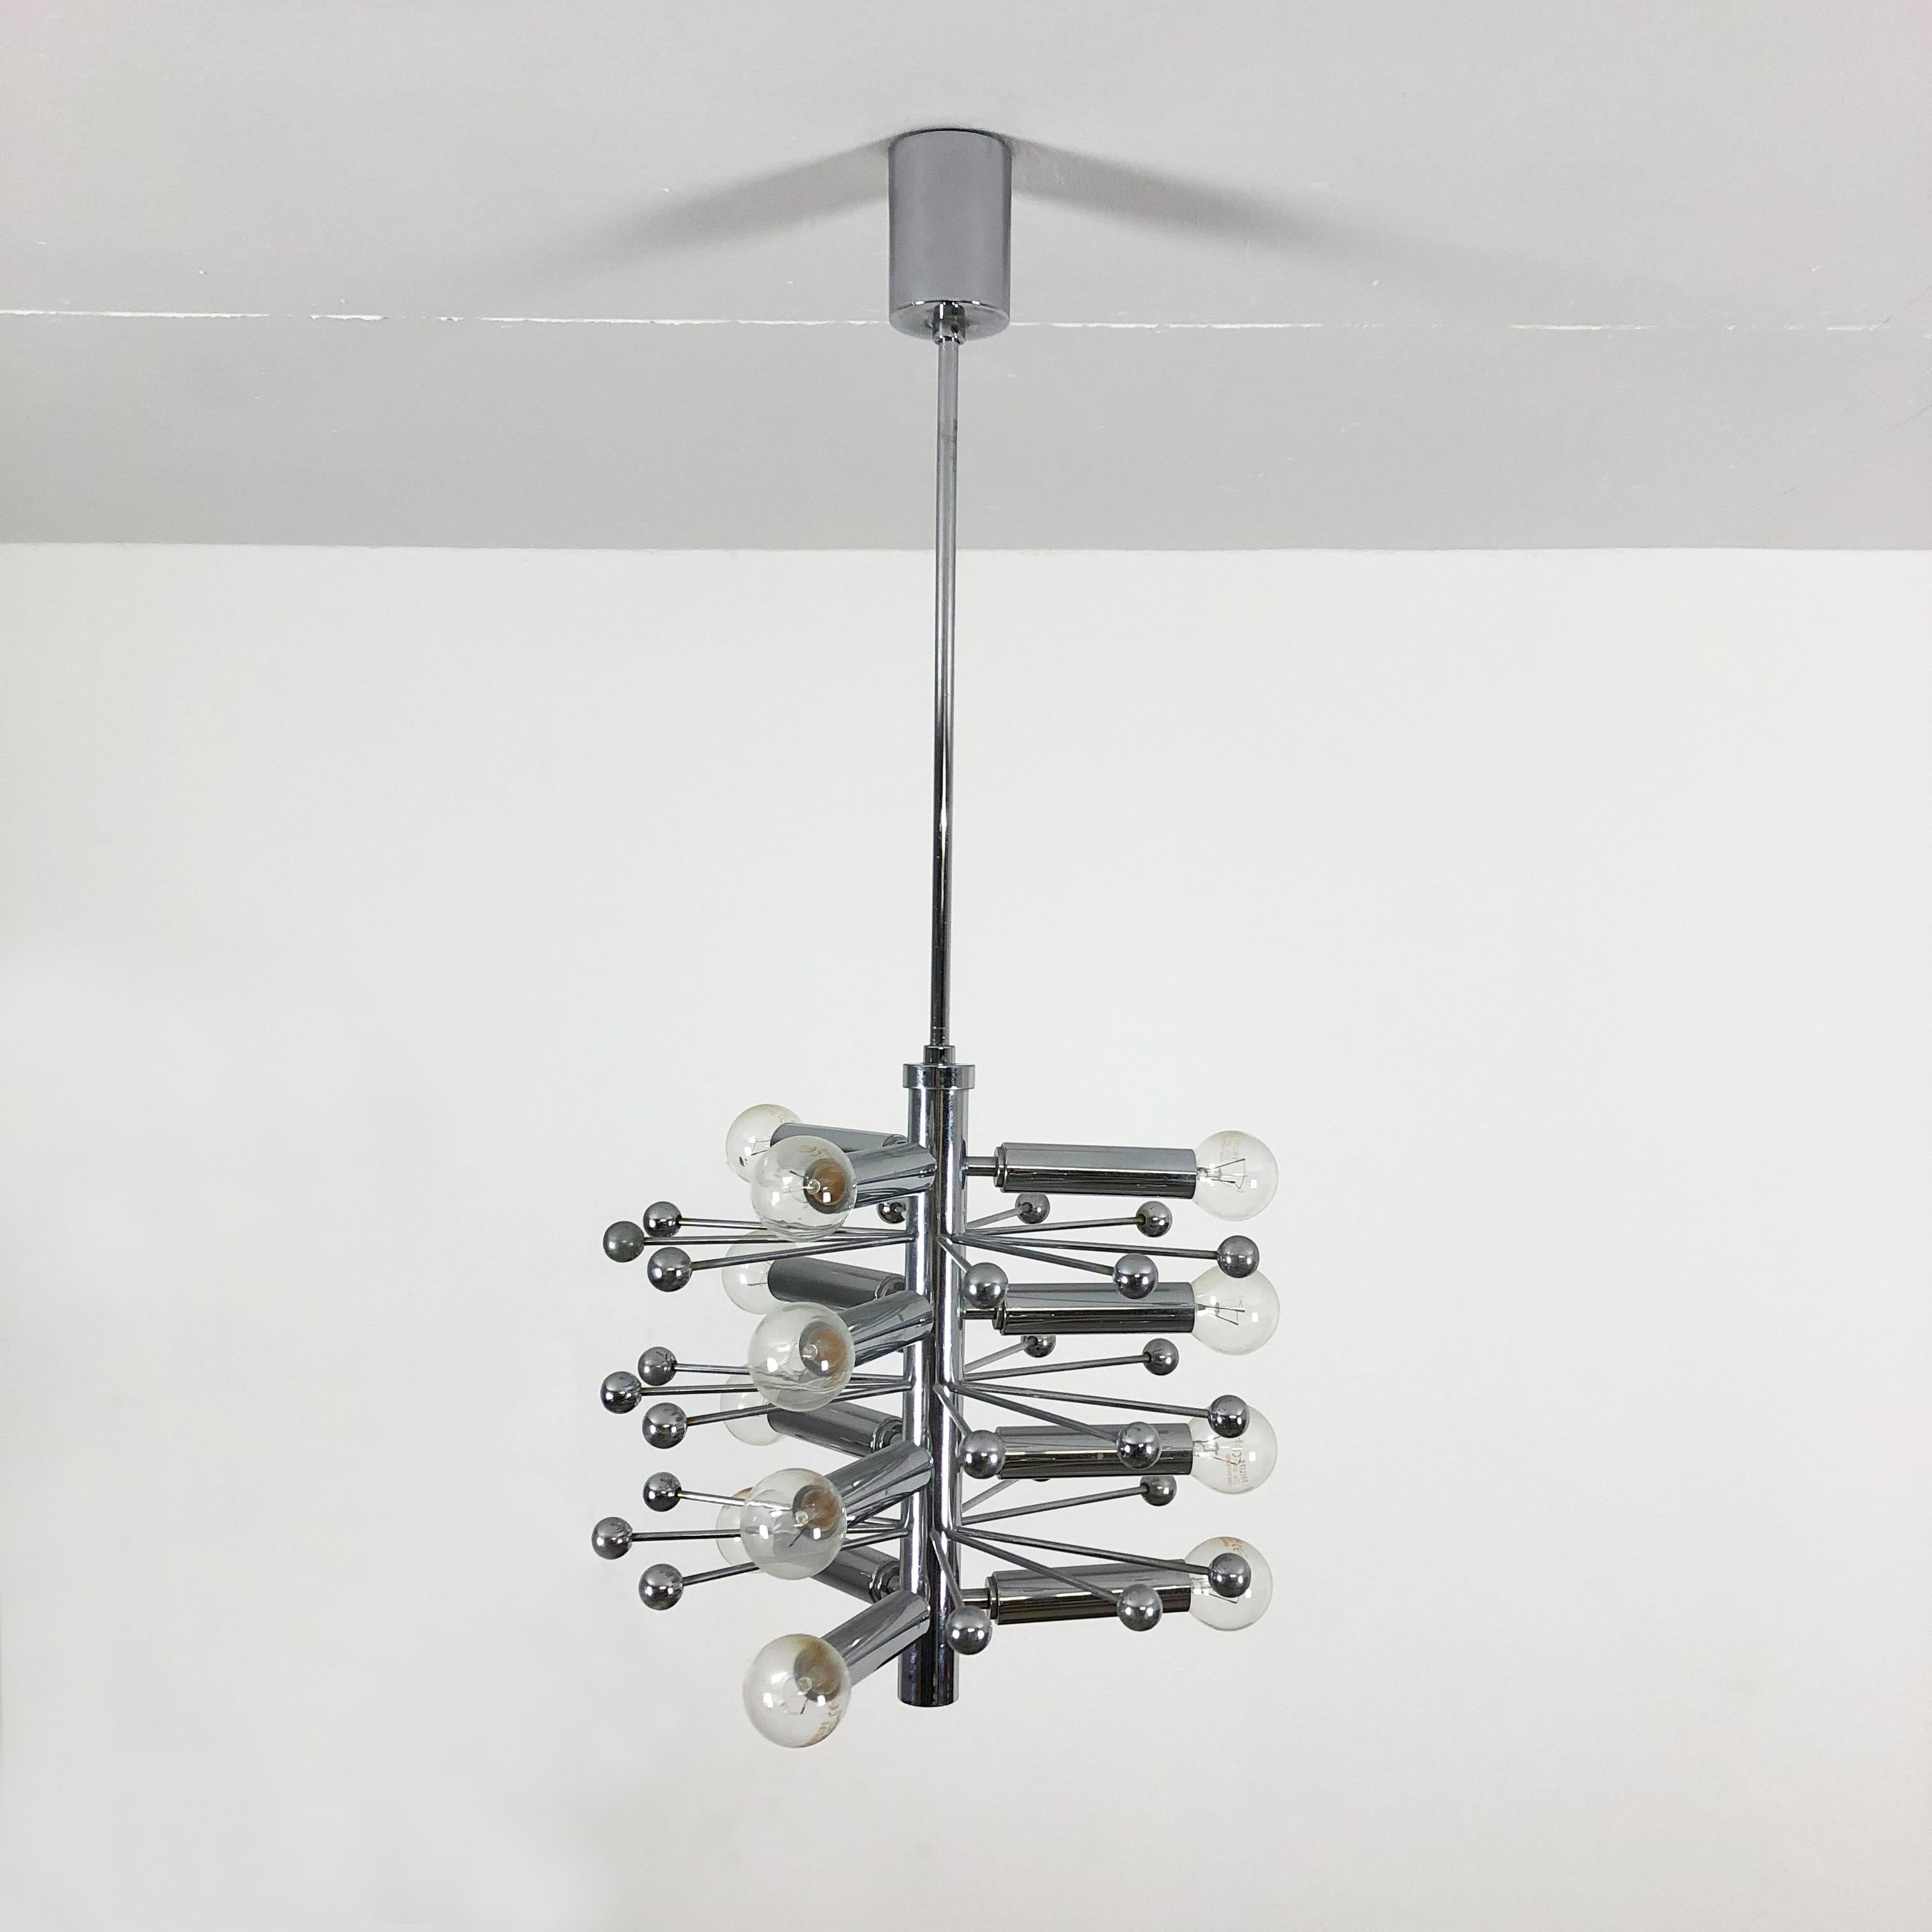 Mid-Century Modern Modernist Chrome Sputnik Hanging Light, Cosack Lights, 1970s, Germany For Sale